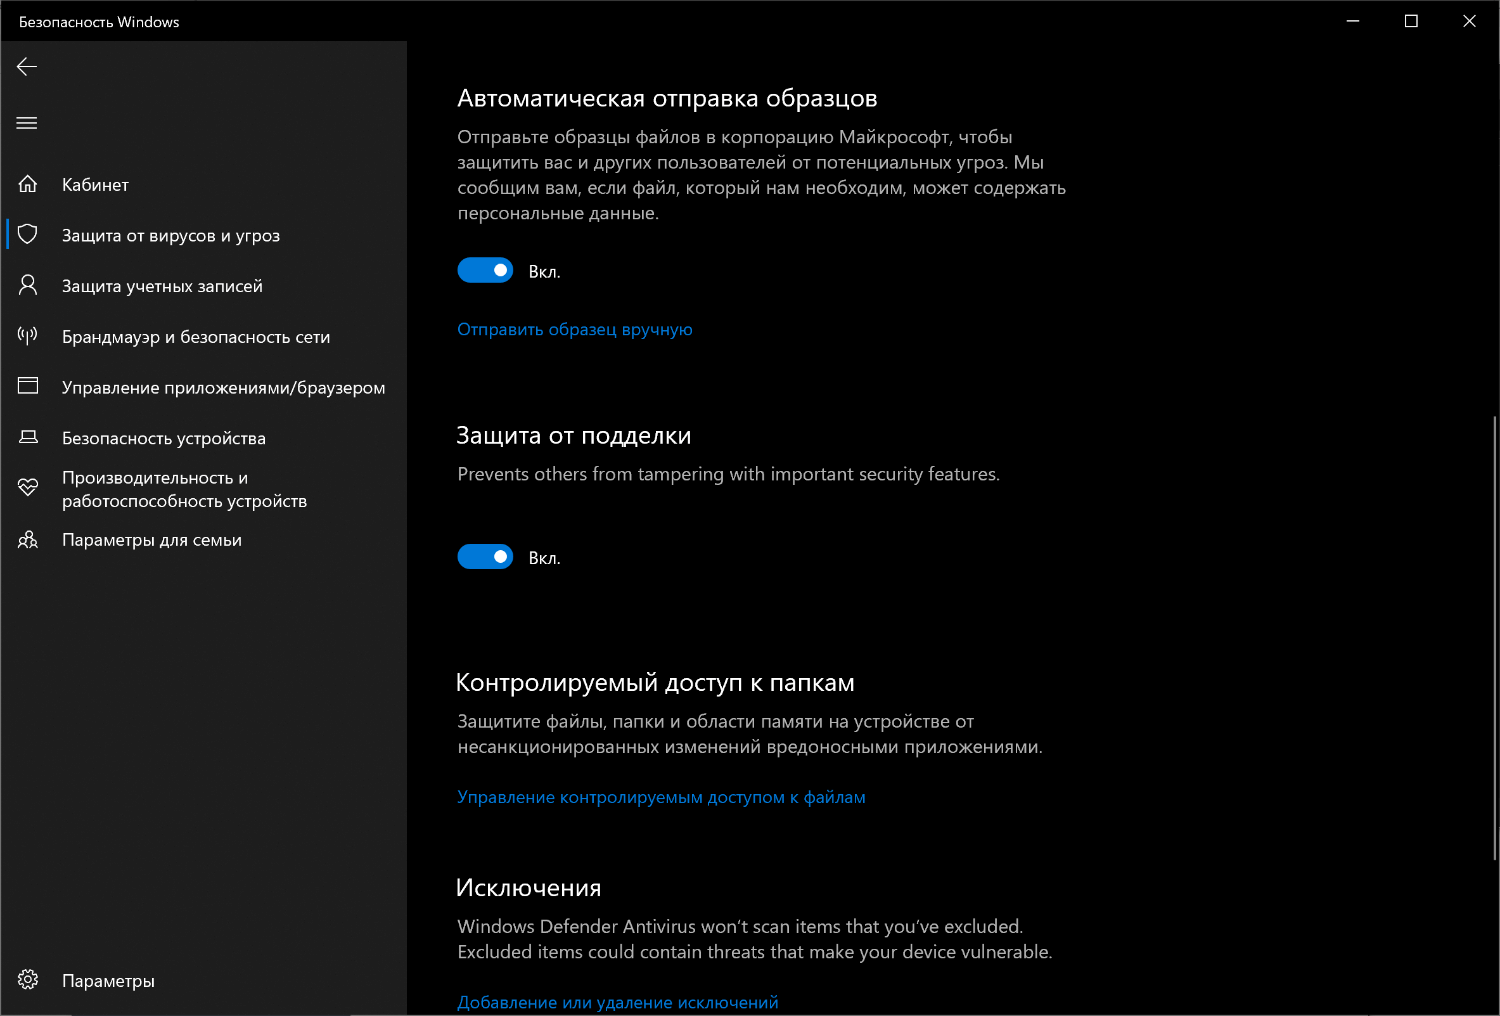 Microsoft выпустила новую предварительную версию будущего обновления функций 2019 года – Windows 10 Insider Preview Build 18305. Данная сборка стала последней в этом году 19H1 и получила большое количество интересных новых функций и изменений.